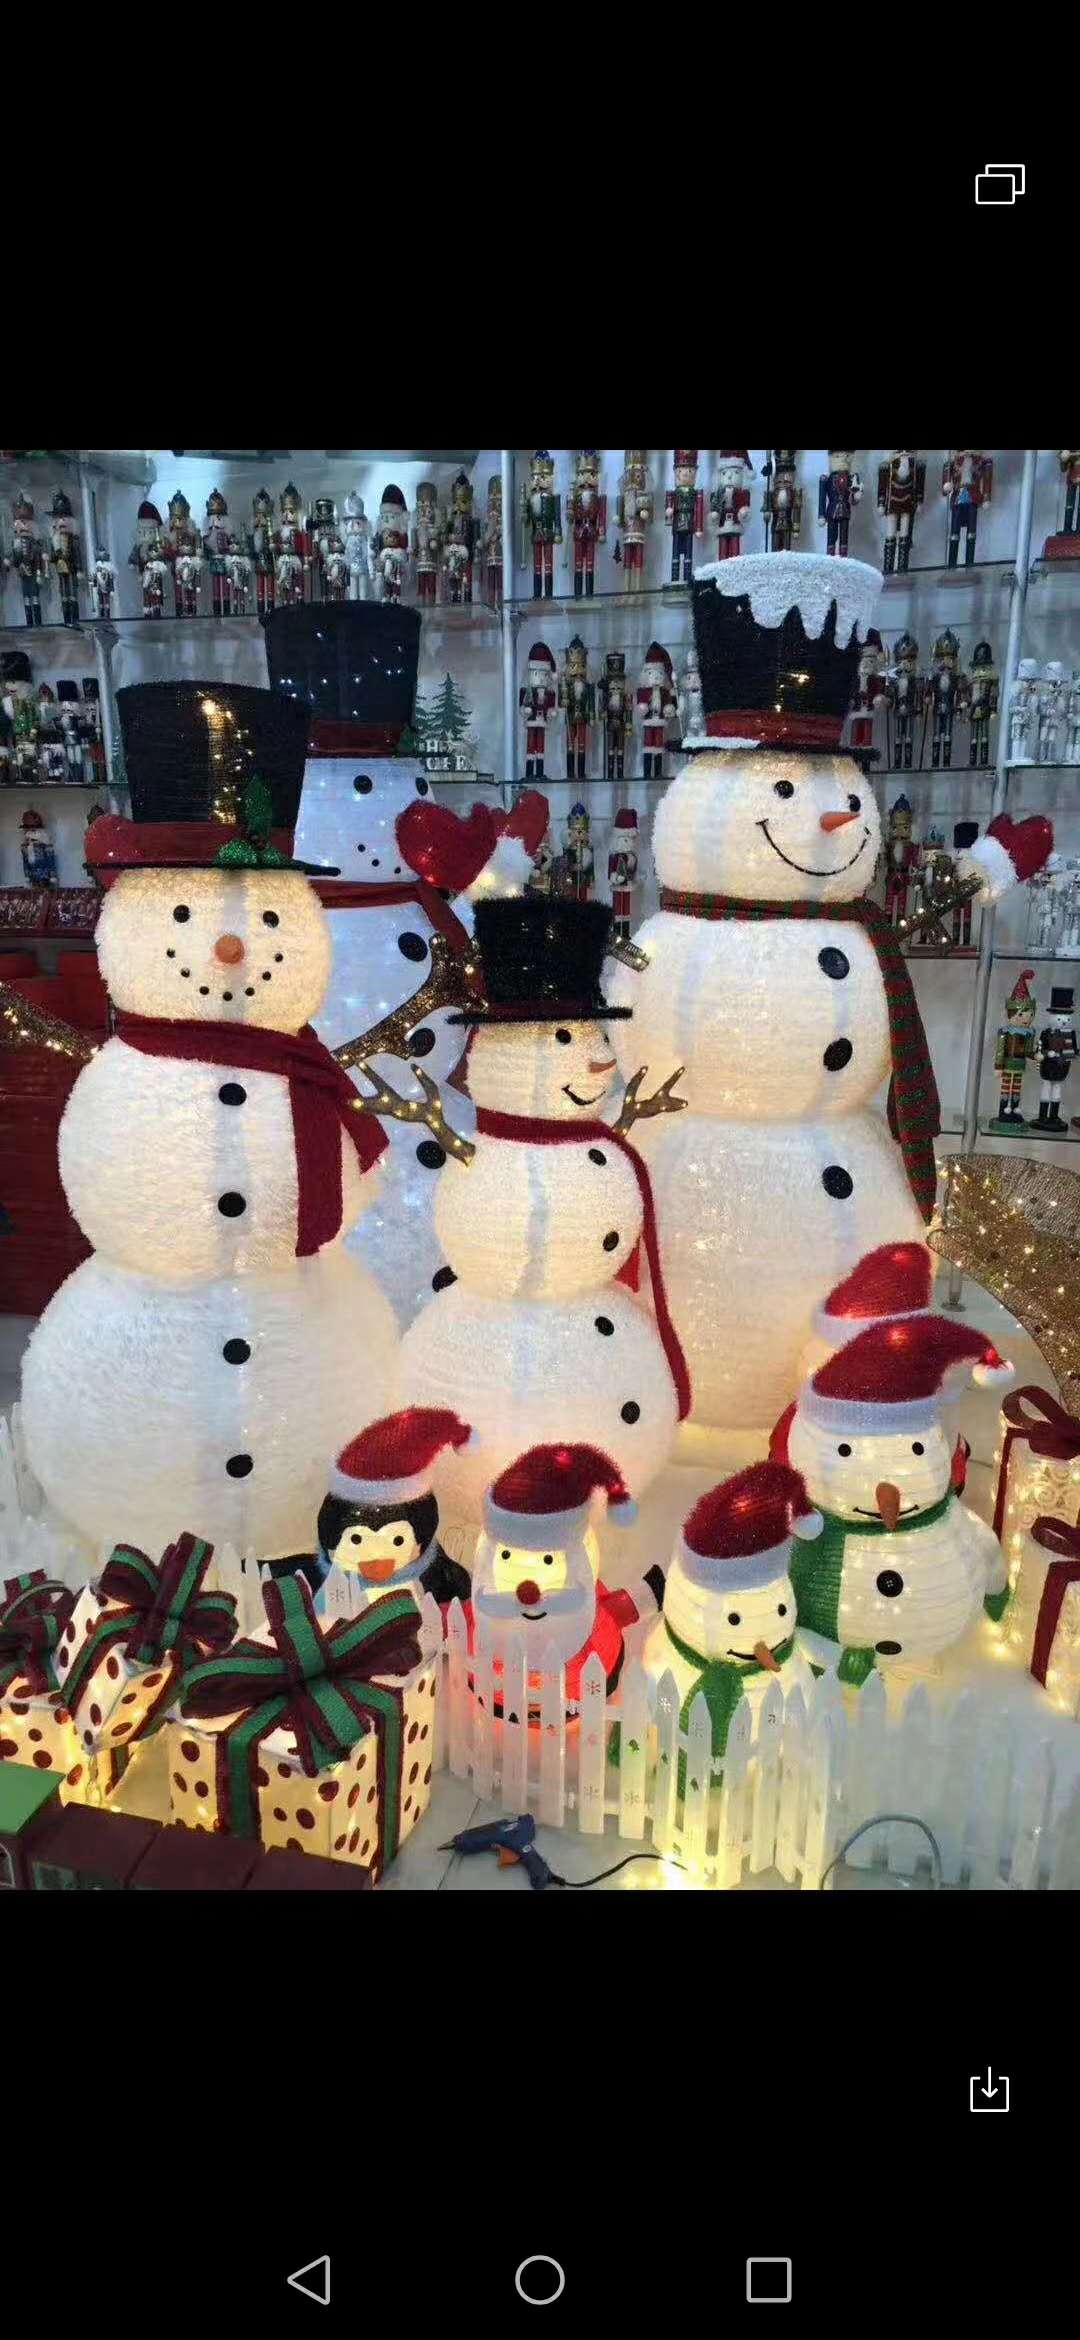 摆件雪人130圣诞节装饰用品